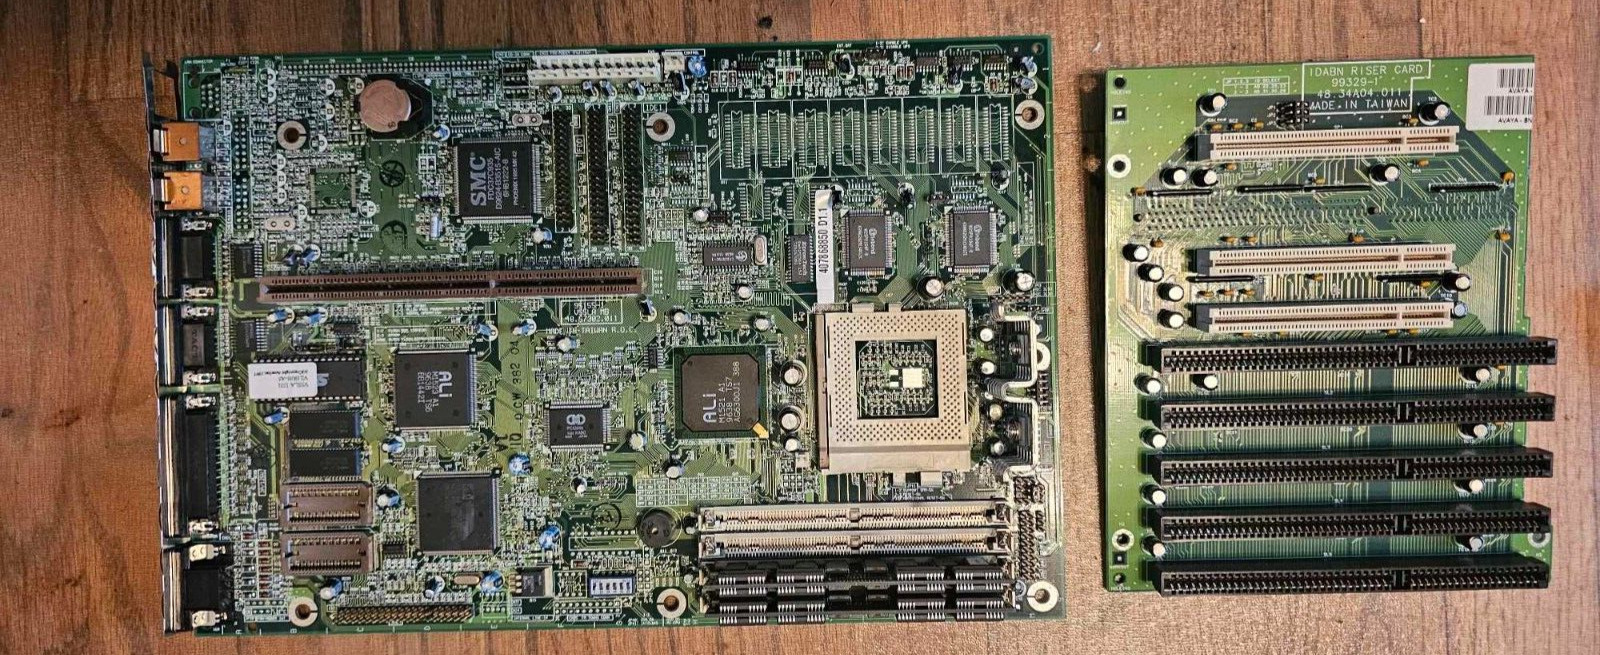 Vintage Acer/Fujitsu Motherboard V55LA FMV-5100D6 AcerMate 930 Socket 7 PGA321